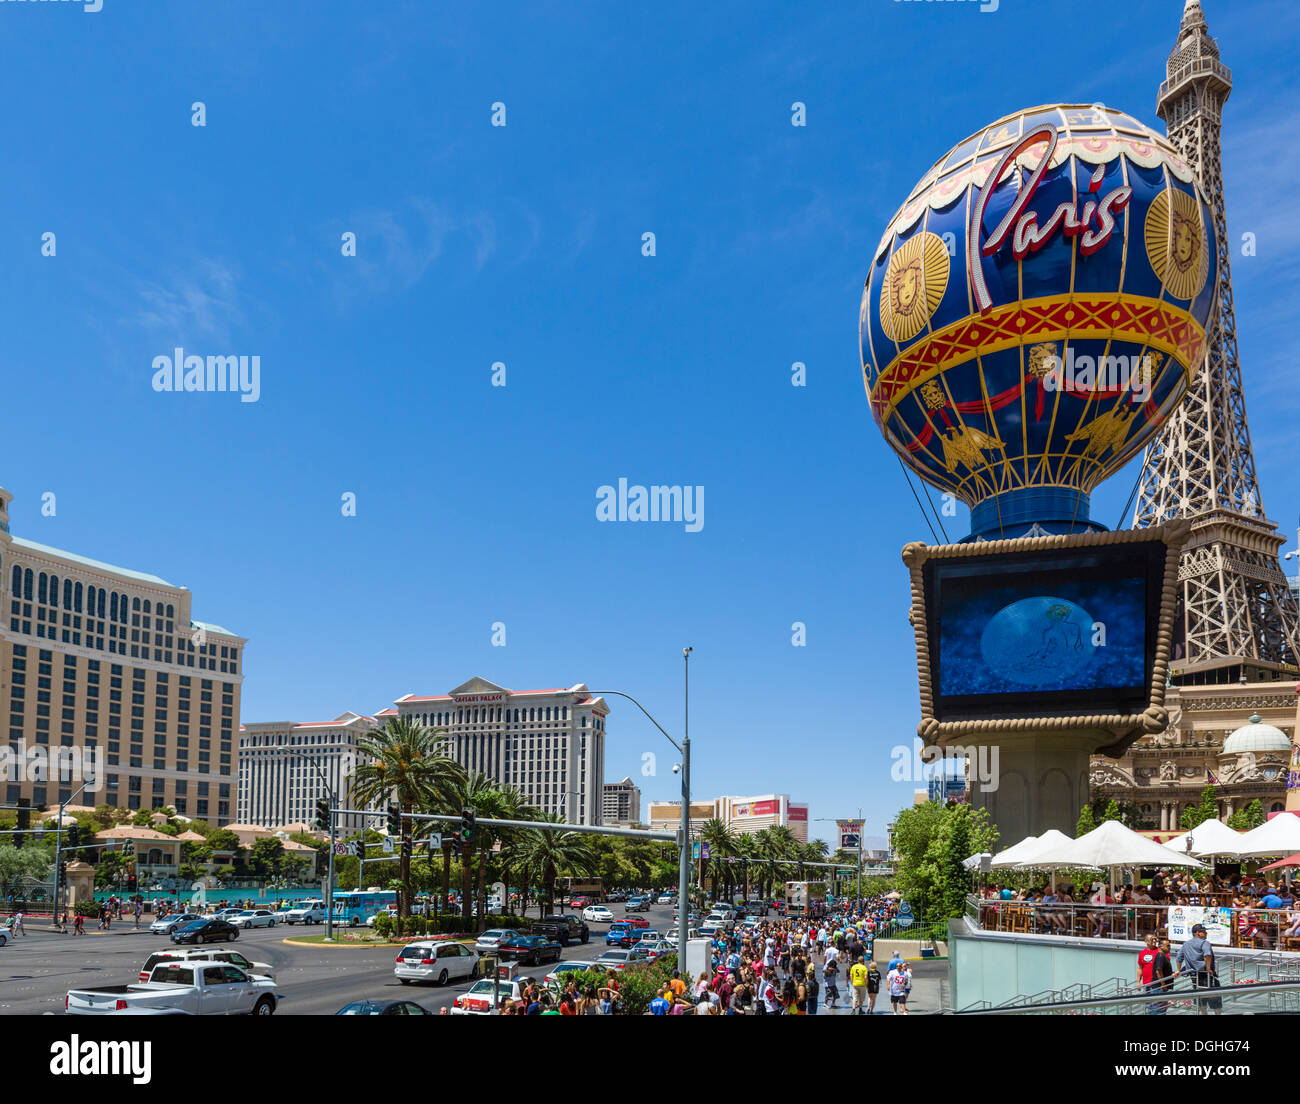 Las Vegas Boulevard South (The Strip) near Paris hotel and casino, Las Vegas, Nevada, USA Stock Photo